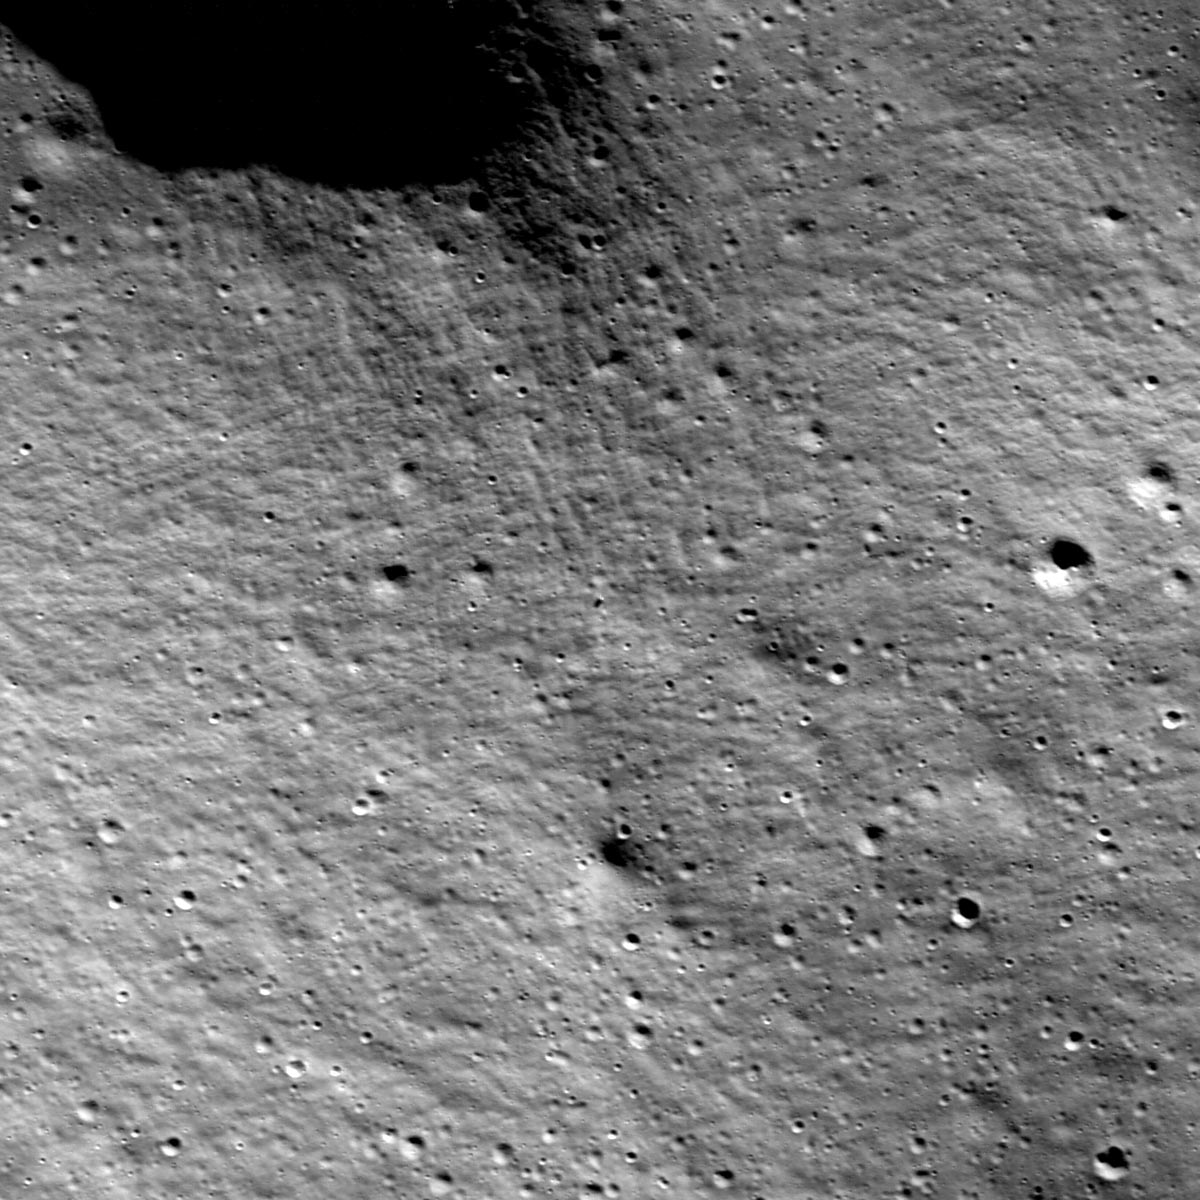 LRO-Views-Odysseus-Landing-Site-on-Moon.jpg